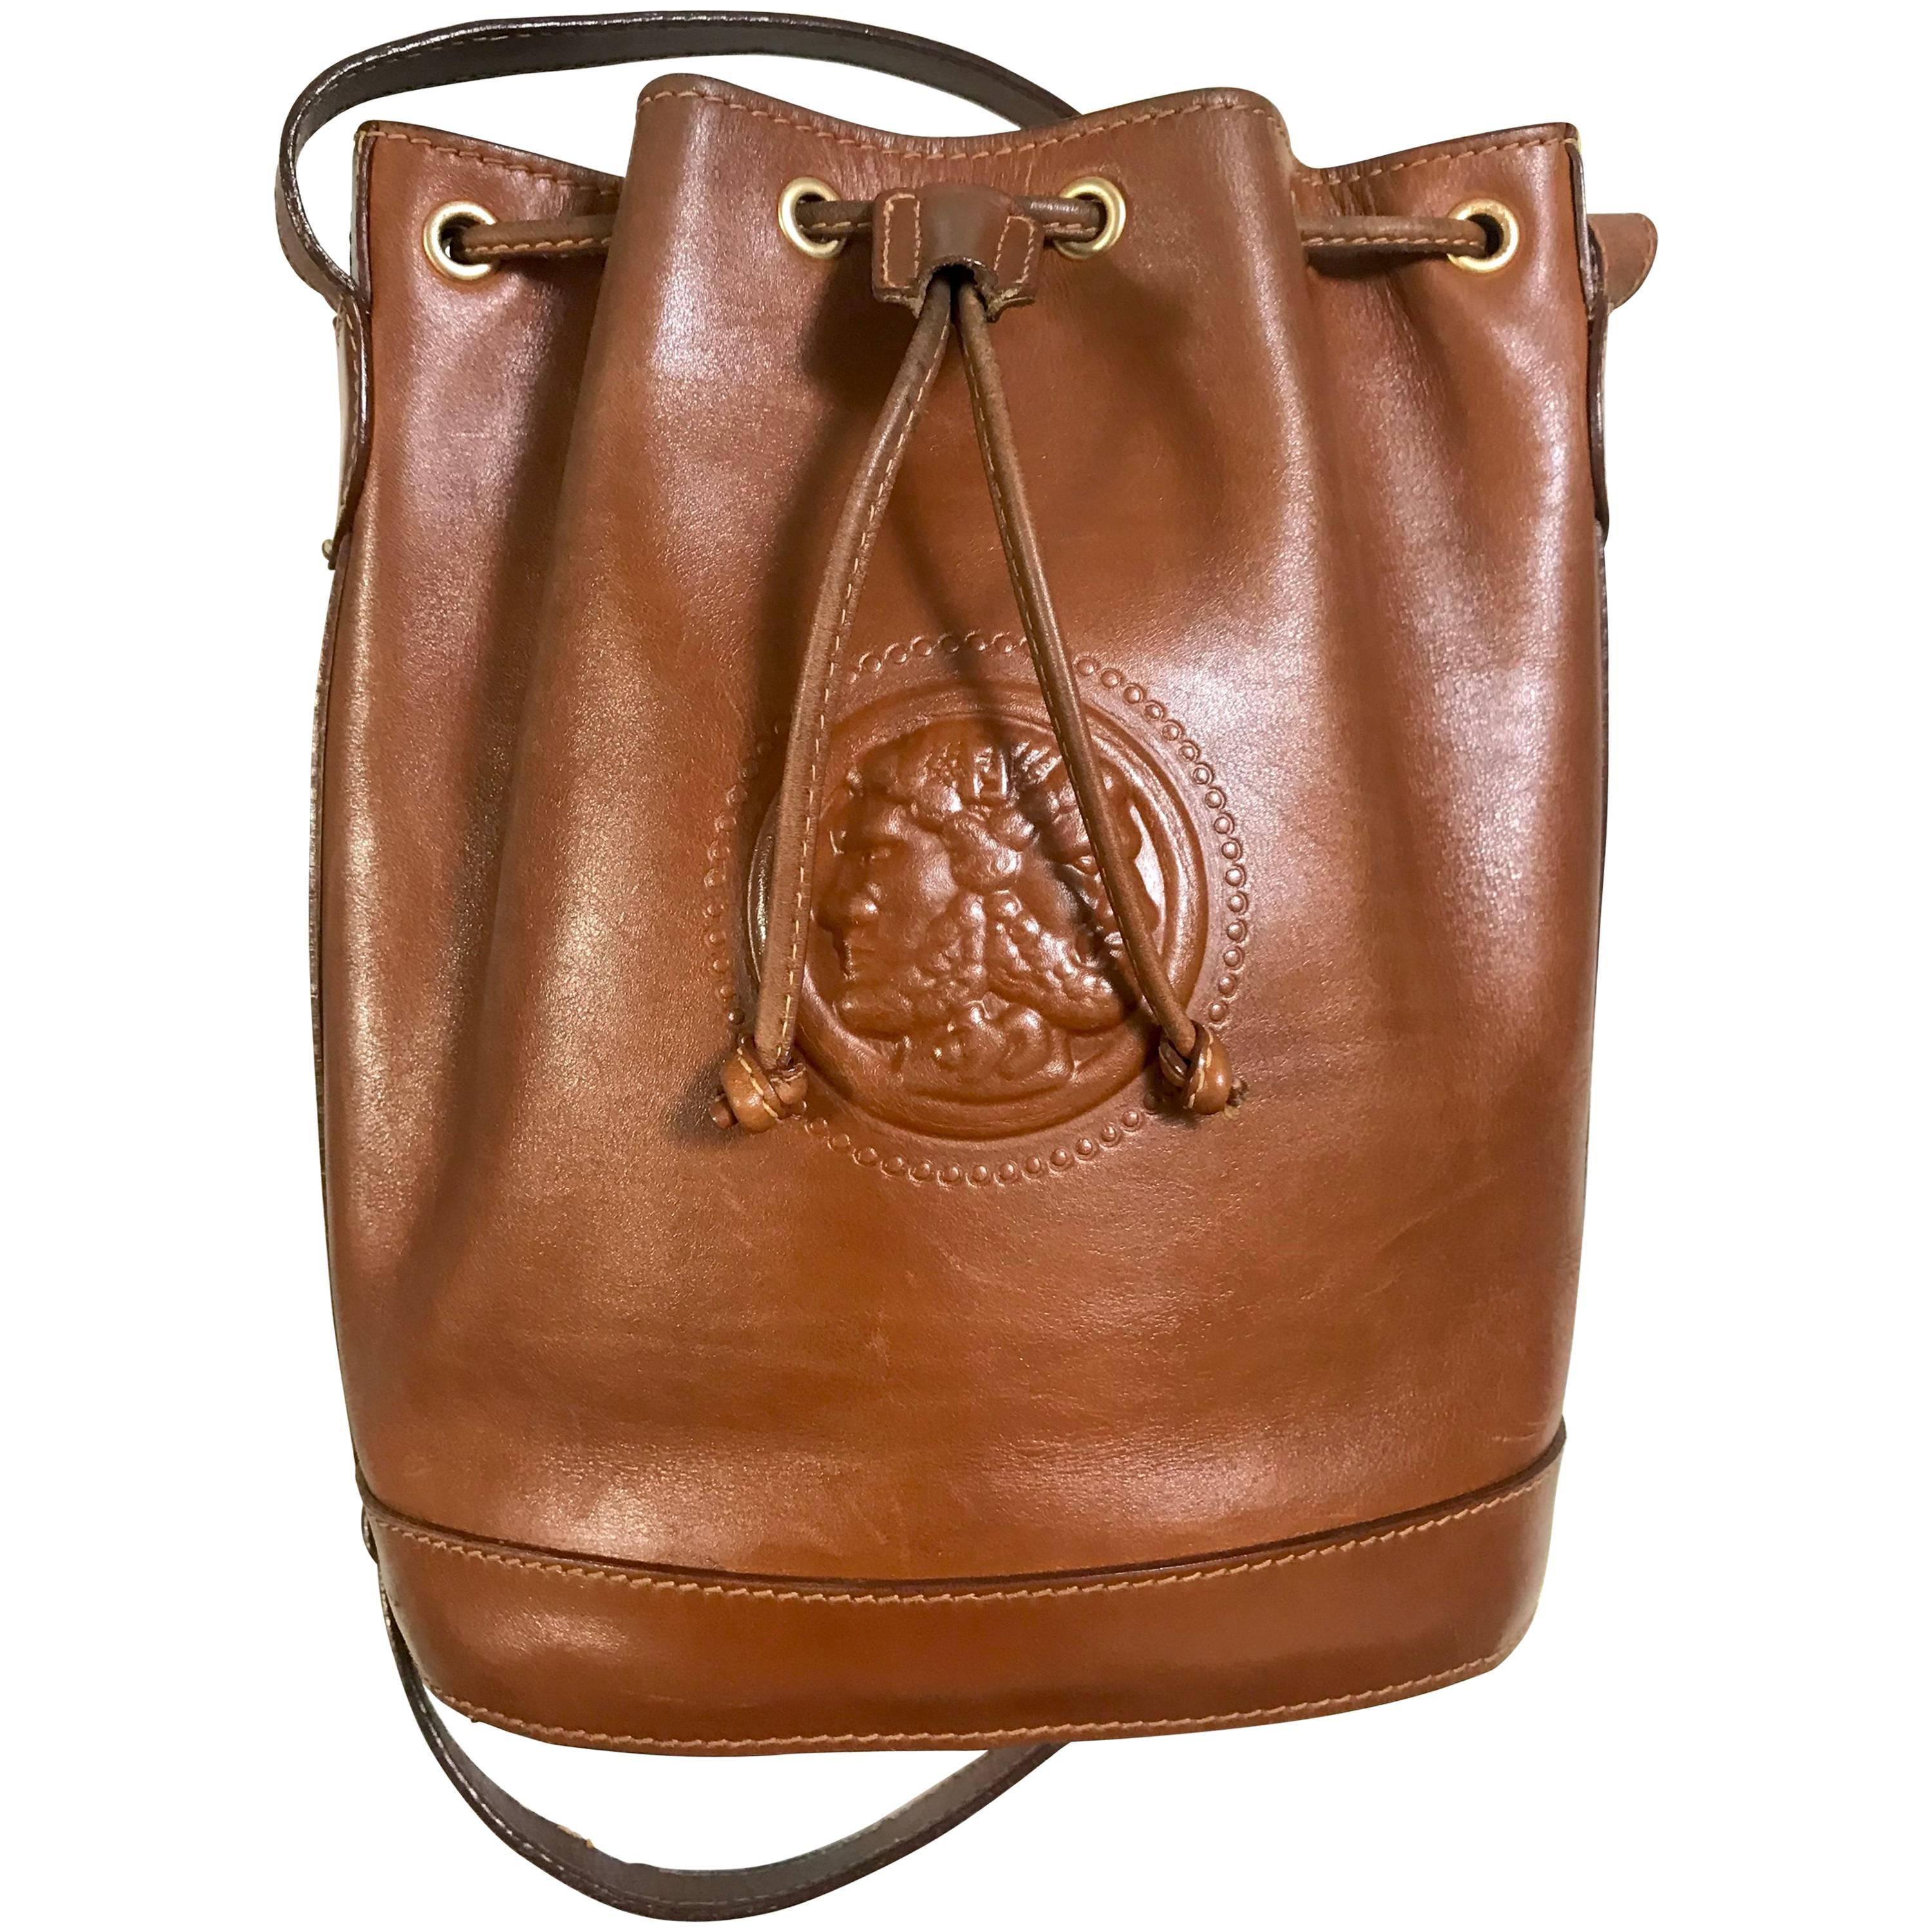 Vintage FENDI brown leather hobo bucket, shoulder bag with drawstring and Janus.